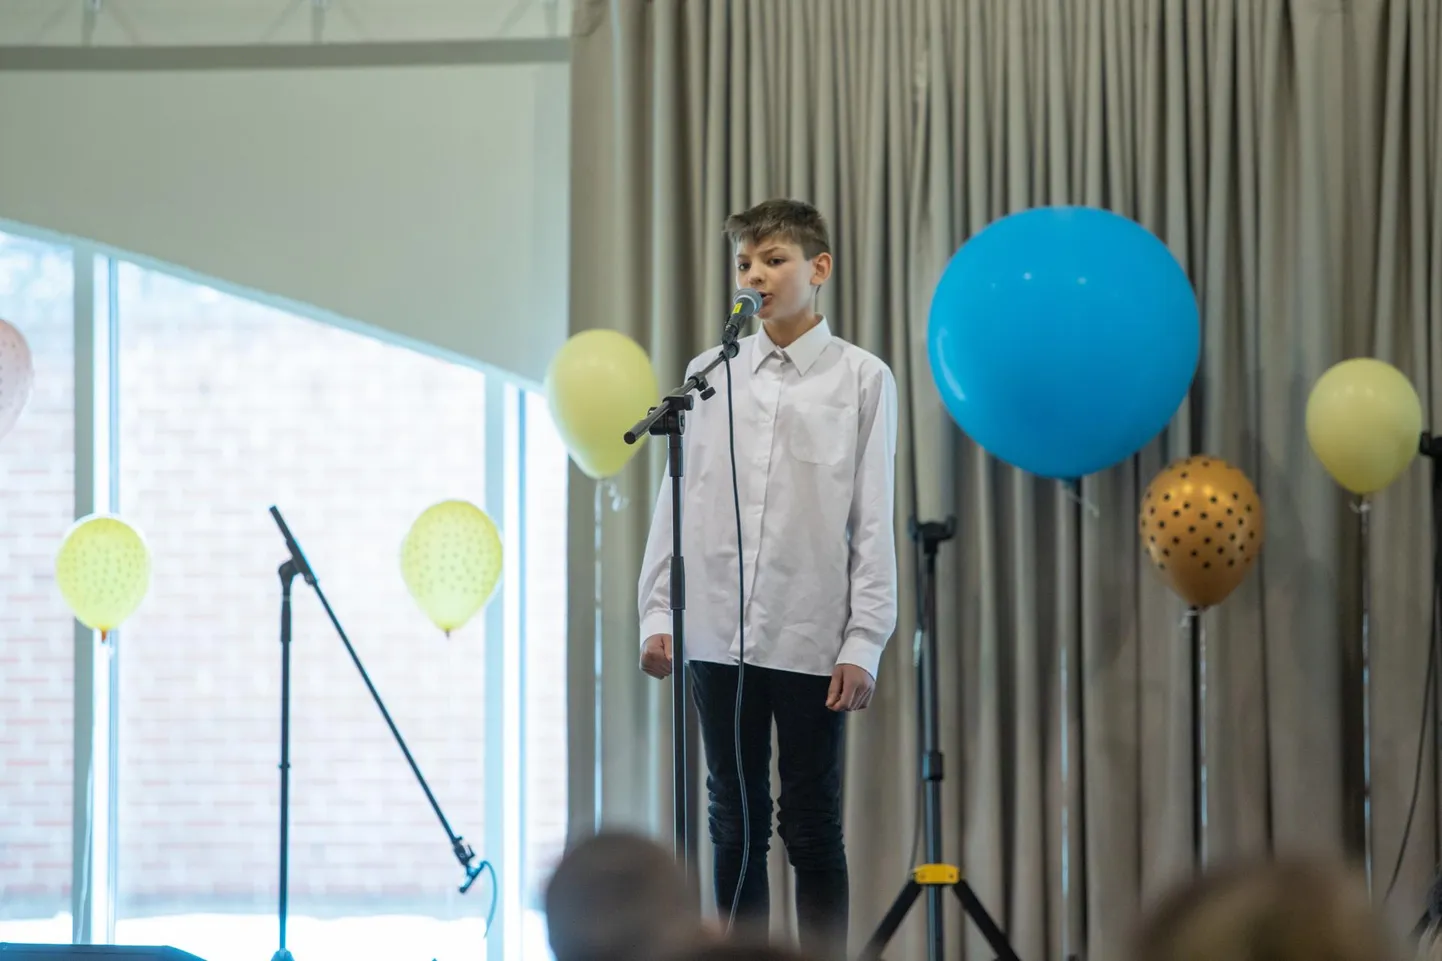 Lauluvõistluse grand prix&#39; võitis Ämmuste kooli 11-aastane õpilane Robin Selks, kelle õpetaja on Anne Gomaa.